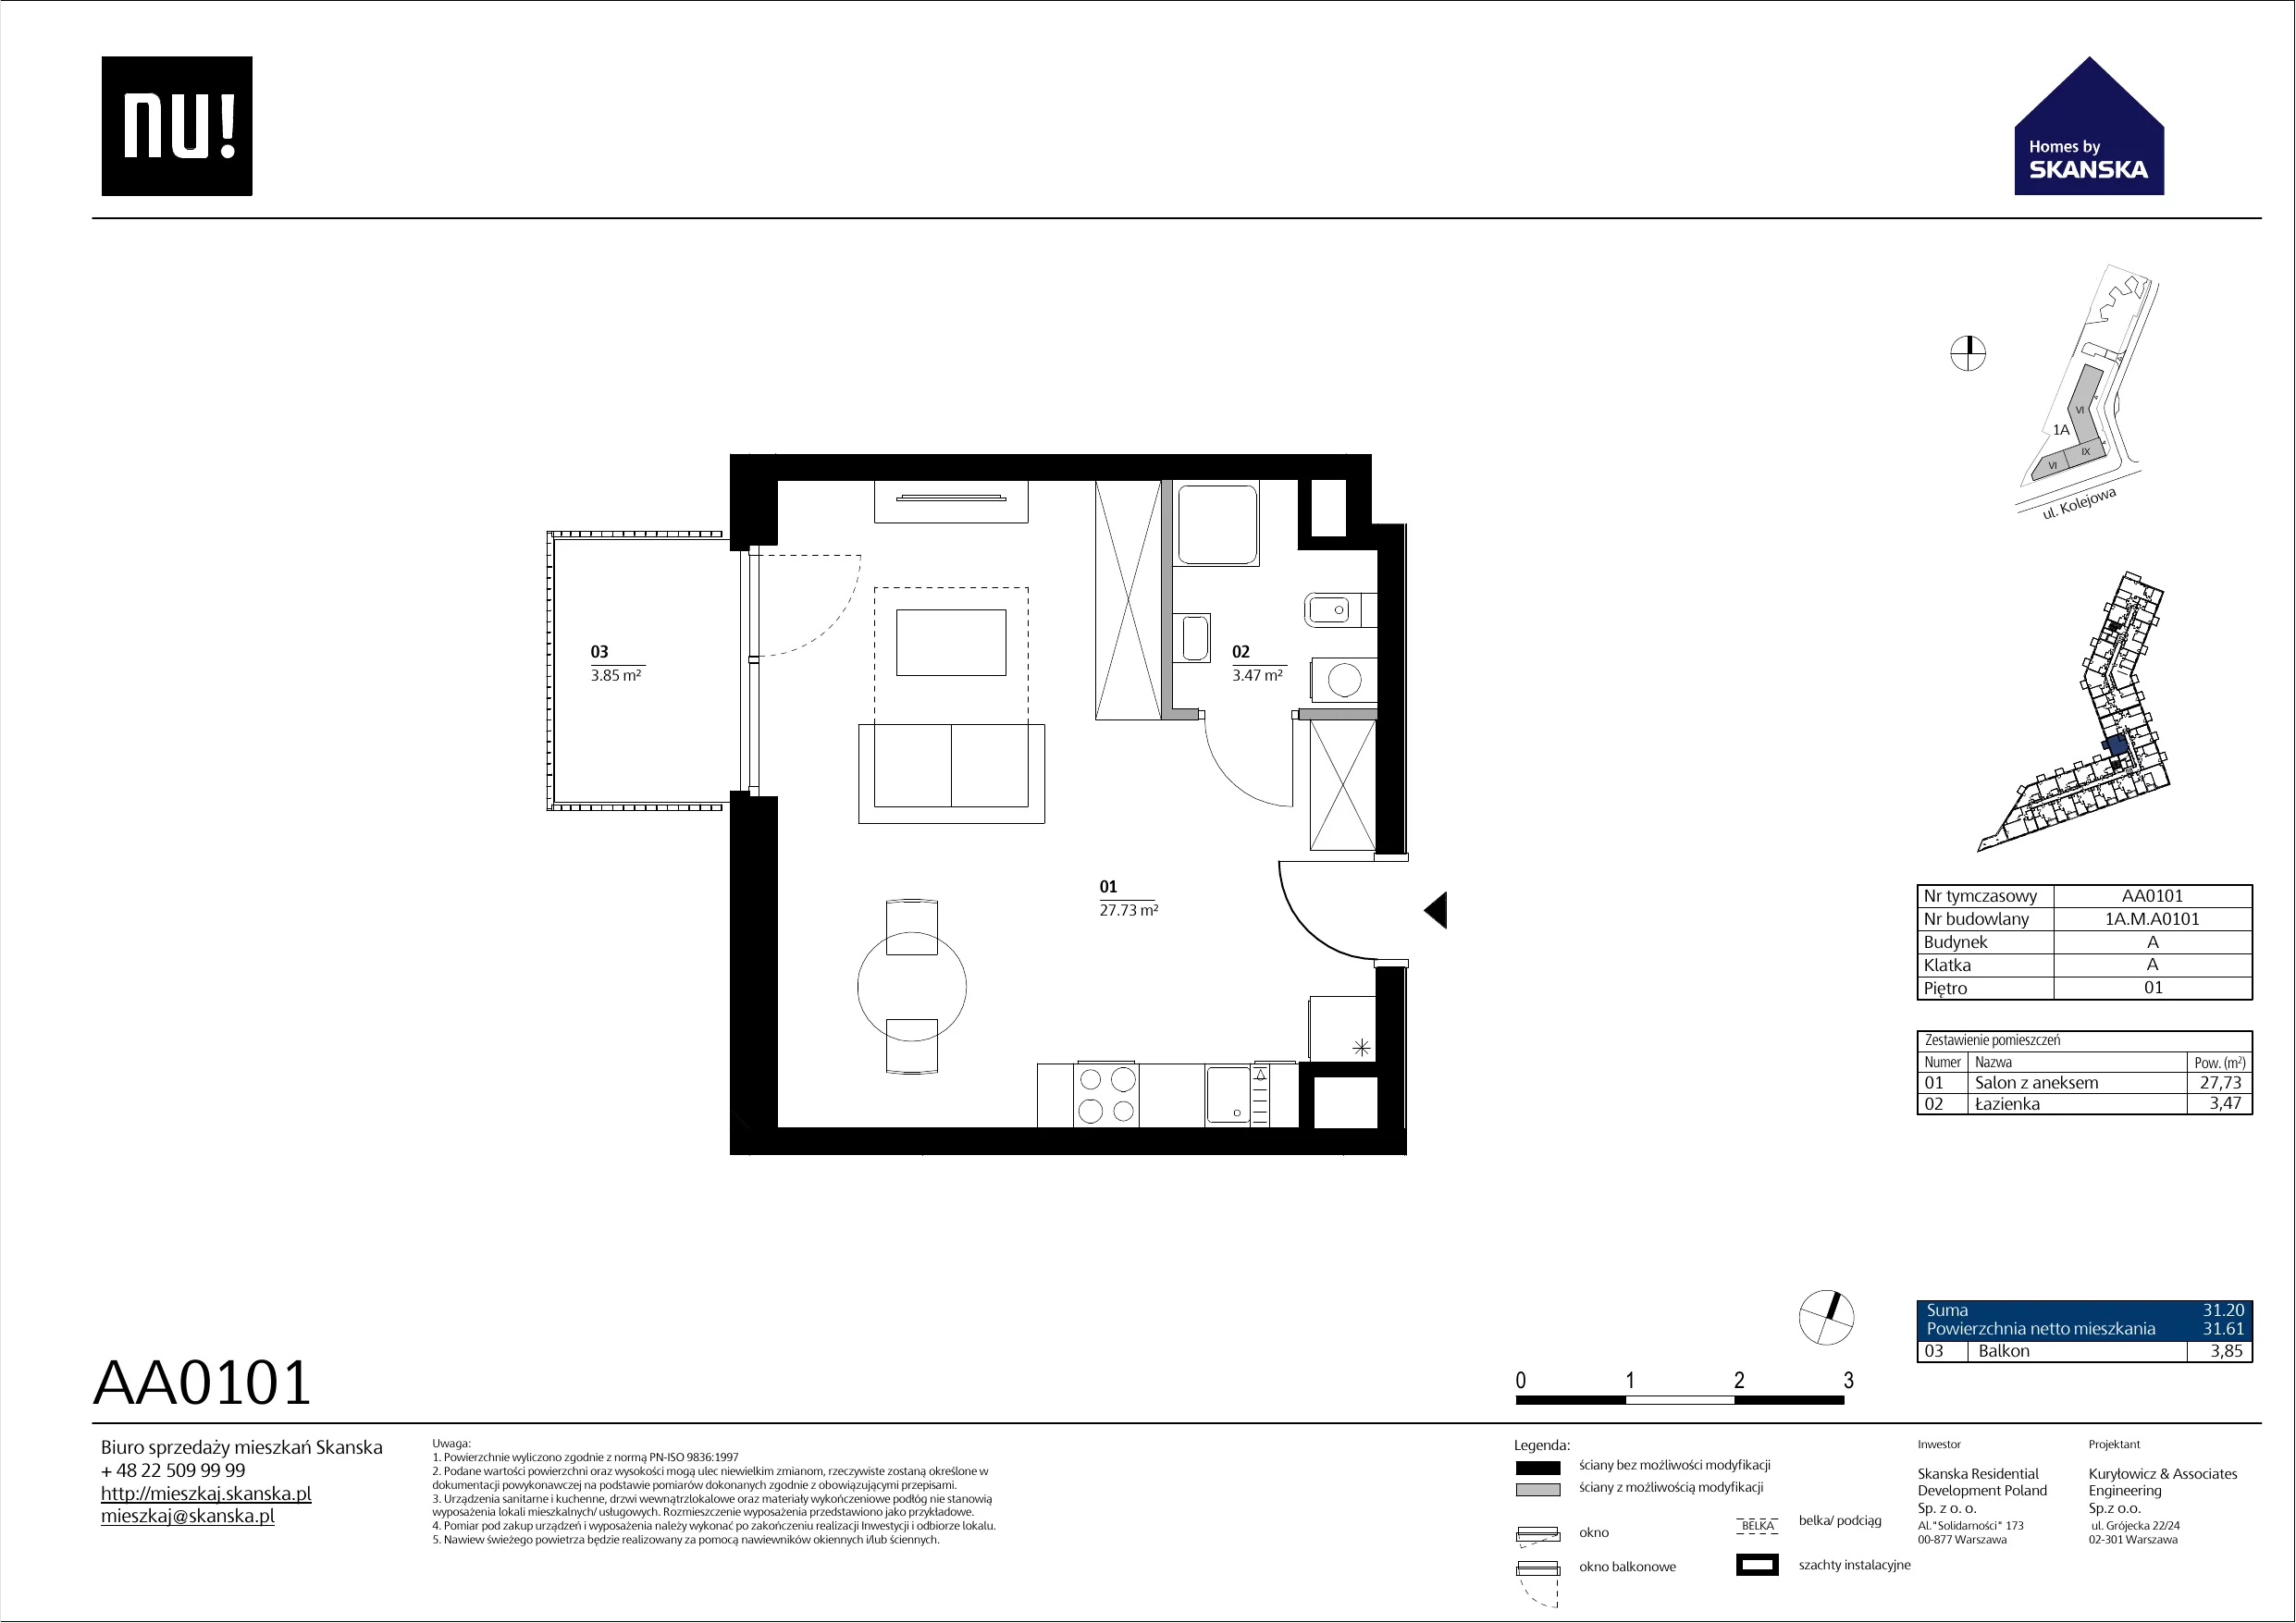 Mieszkanie 31,21 m², piętro 1, oferta nr AA0101, NU Warszawa Wola, Warszawa, Wola, Czyste, ul. Kolejowa